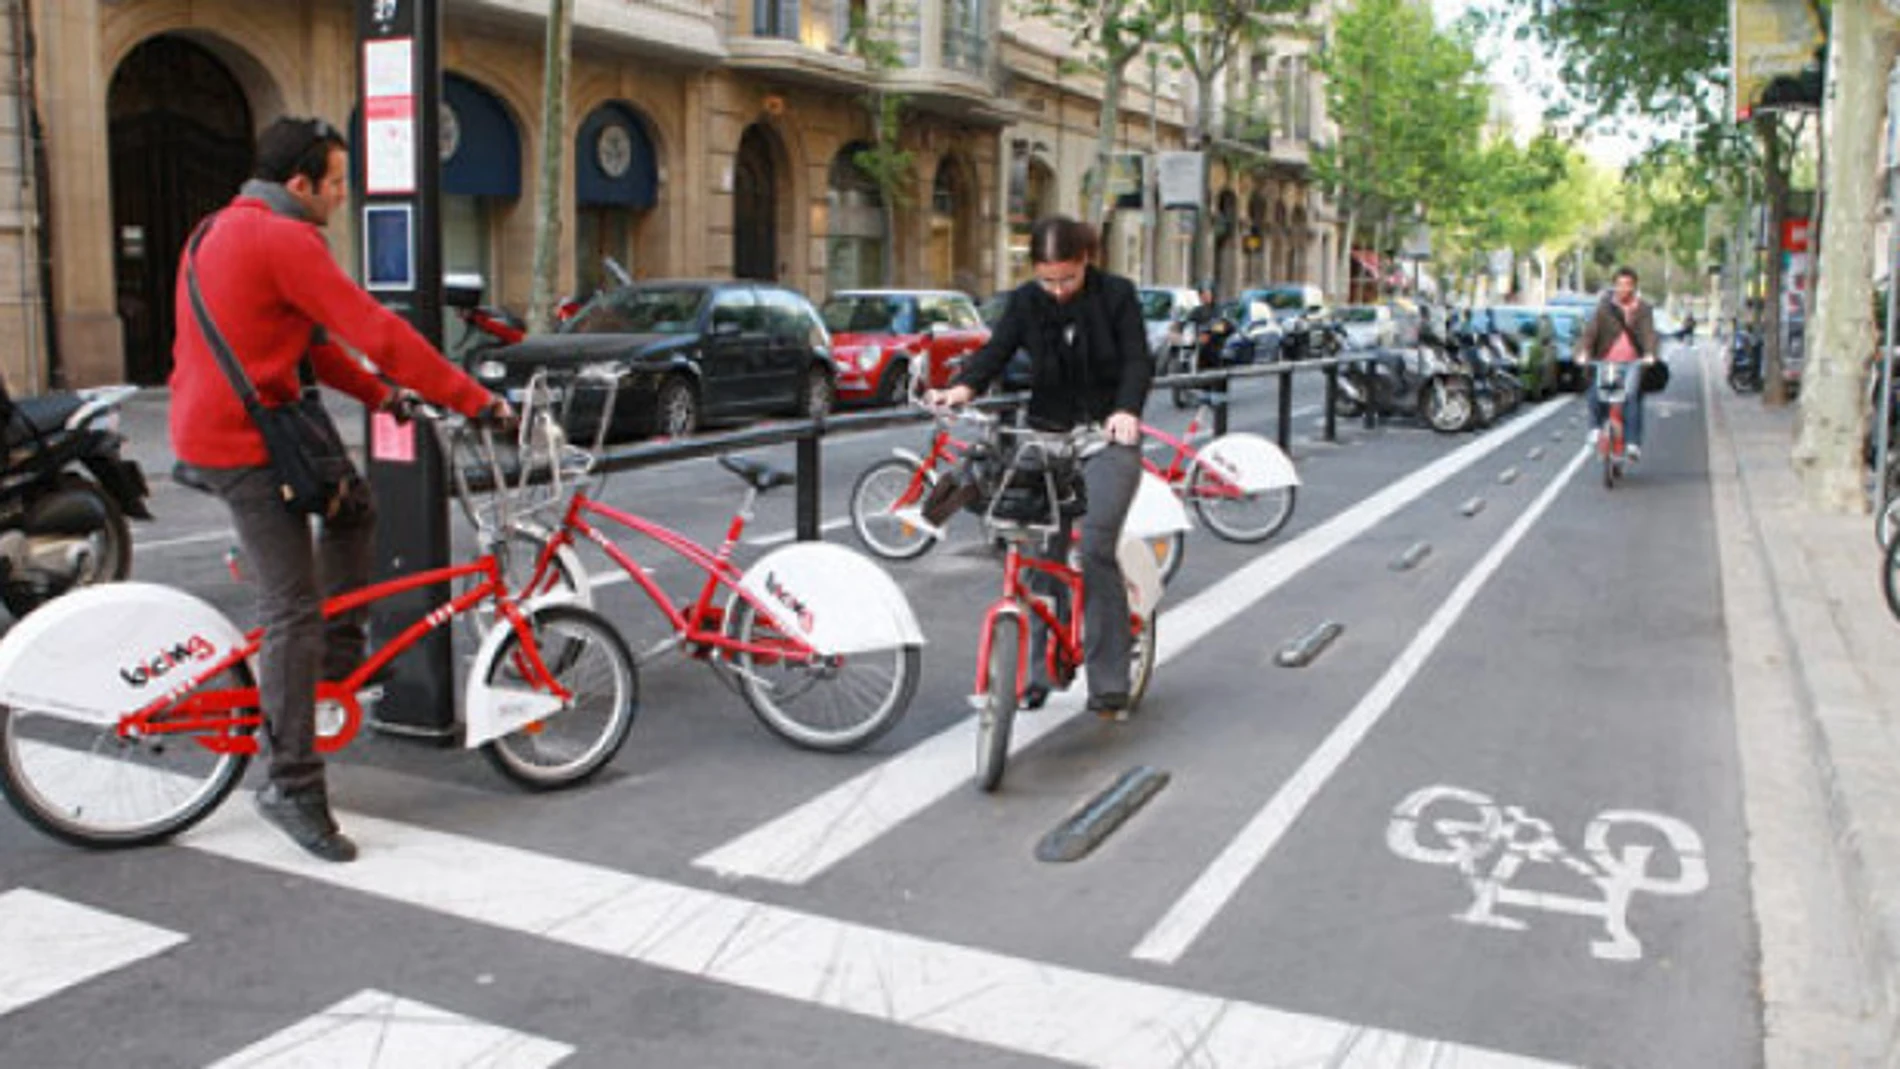 Servicio de bicicletas en Barcelona